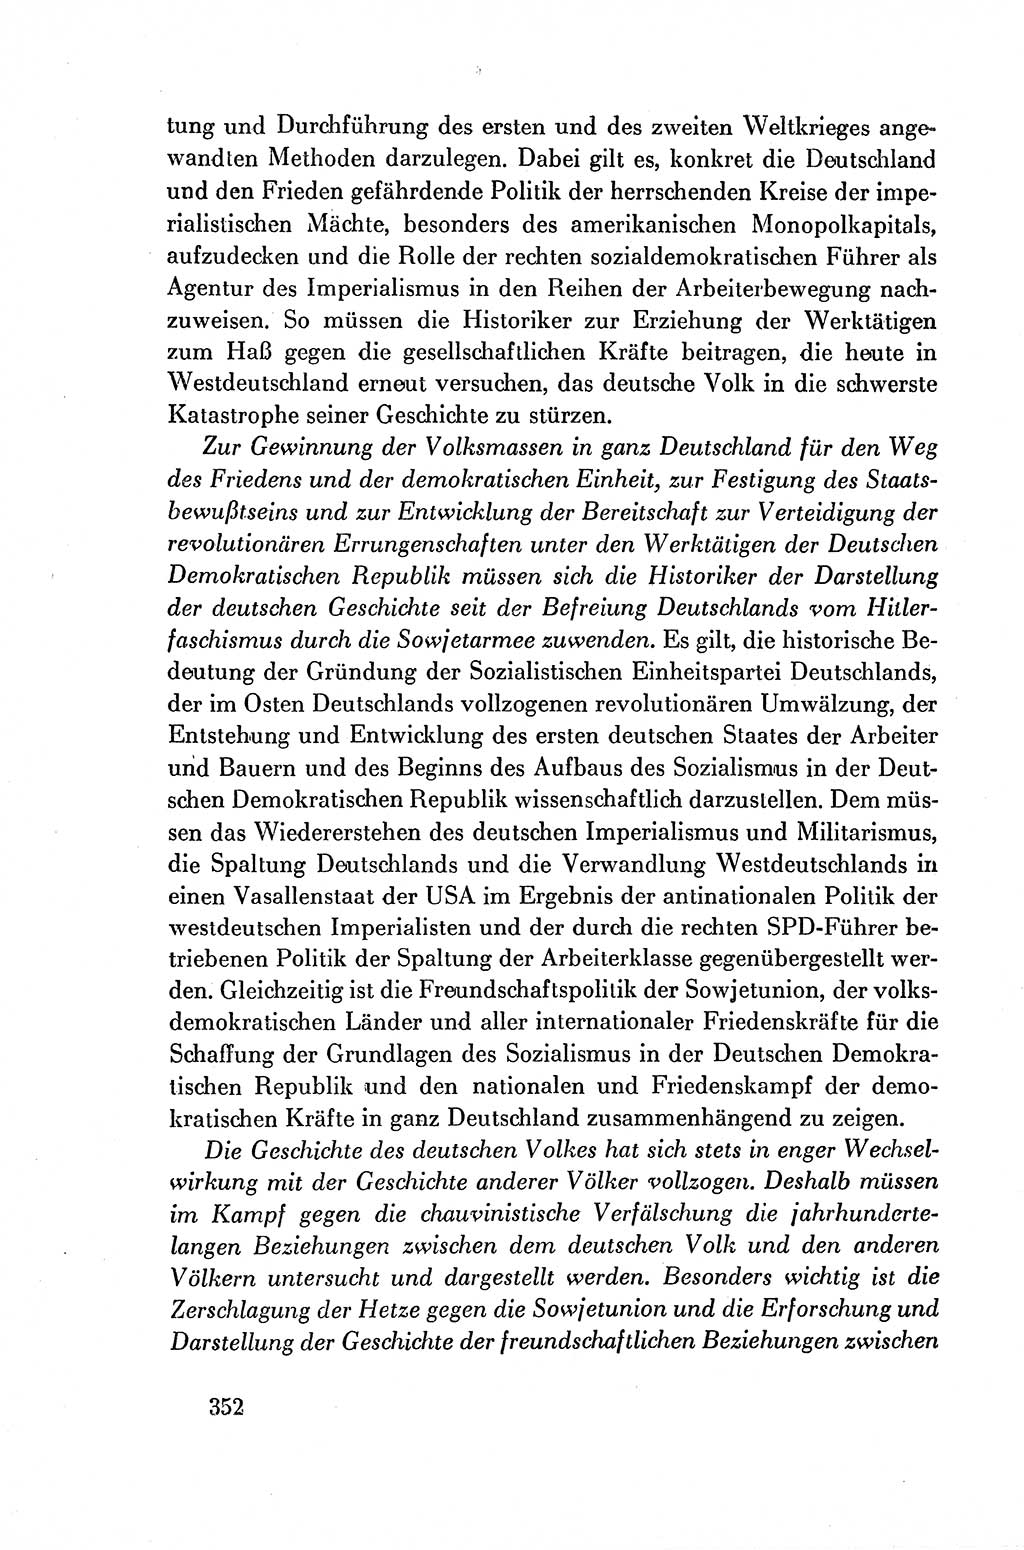 Dokumente der Sozialistischen Einheitspartei Deutschlands (SED) [Deutsche Demokratische Republik (DDR)] 1954-1955, Seite 352 (Dok. SED DDR 1954-1955, S. 352)